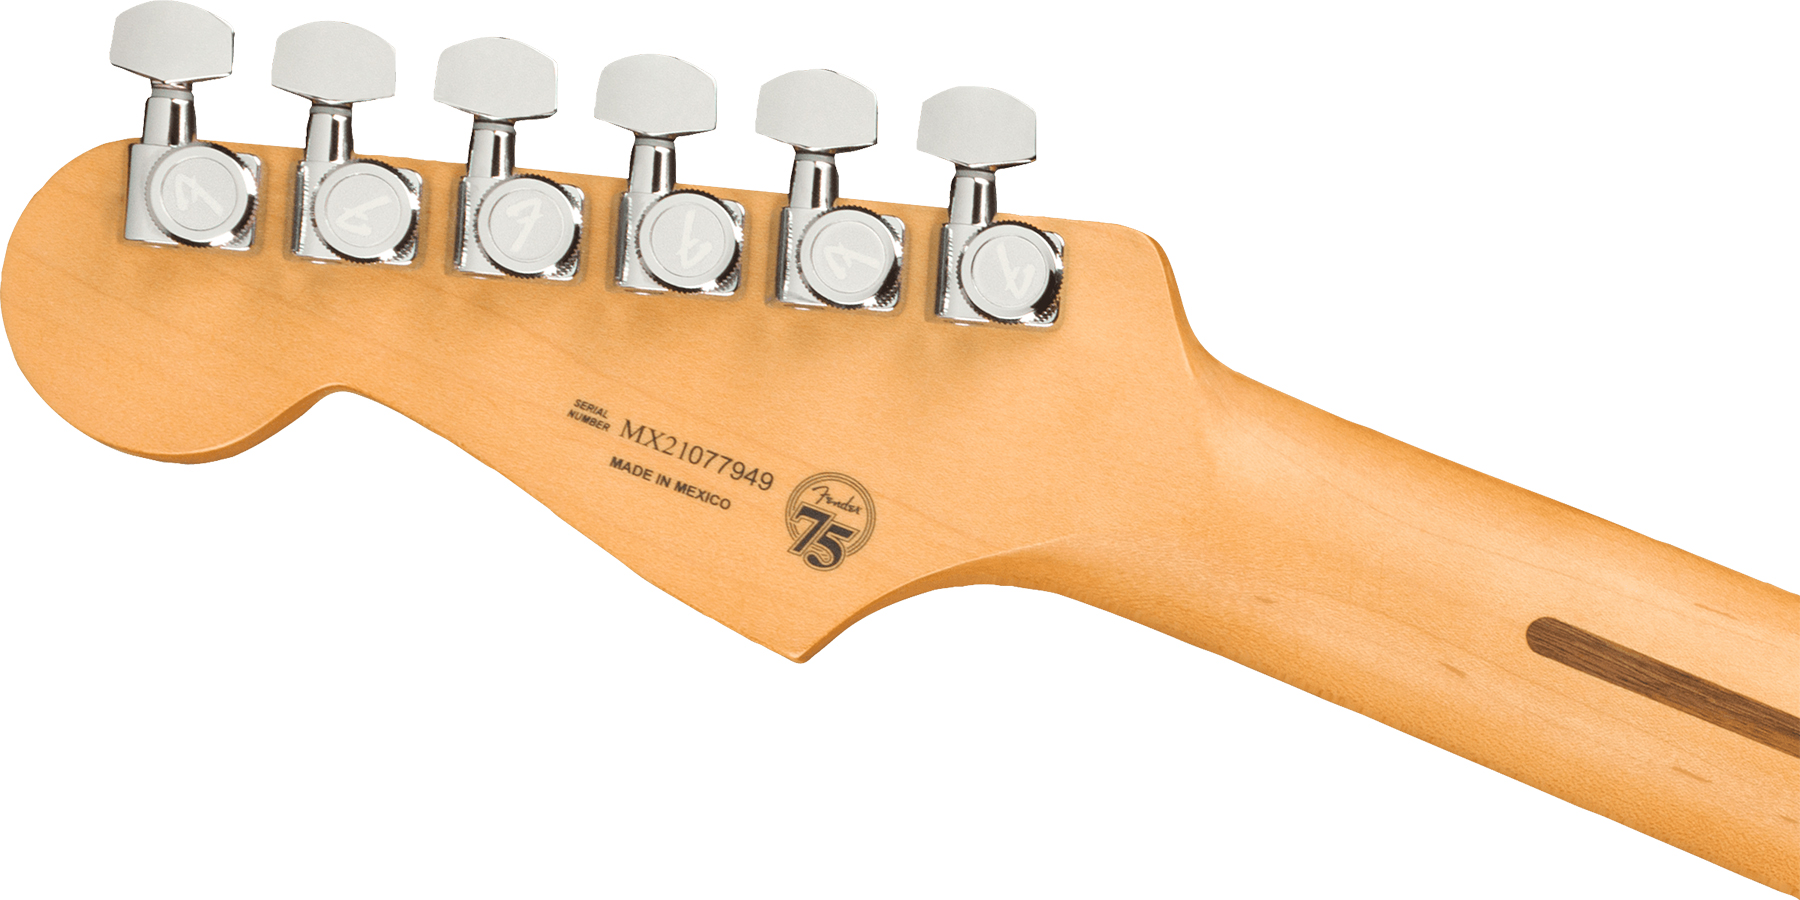 Fender Strat Player Plus Lh Mex Gaucher 3s Trem Mn - 3-color Sunburst - Guitare Électrique Gaucher - Variation 3